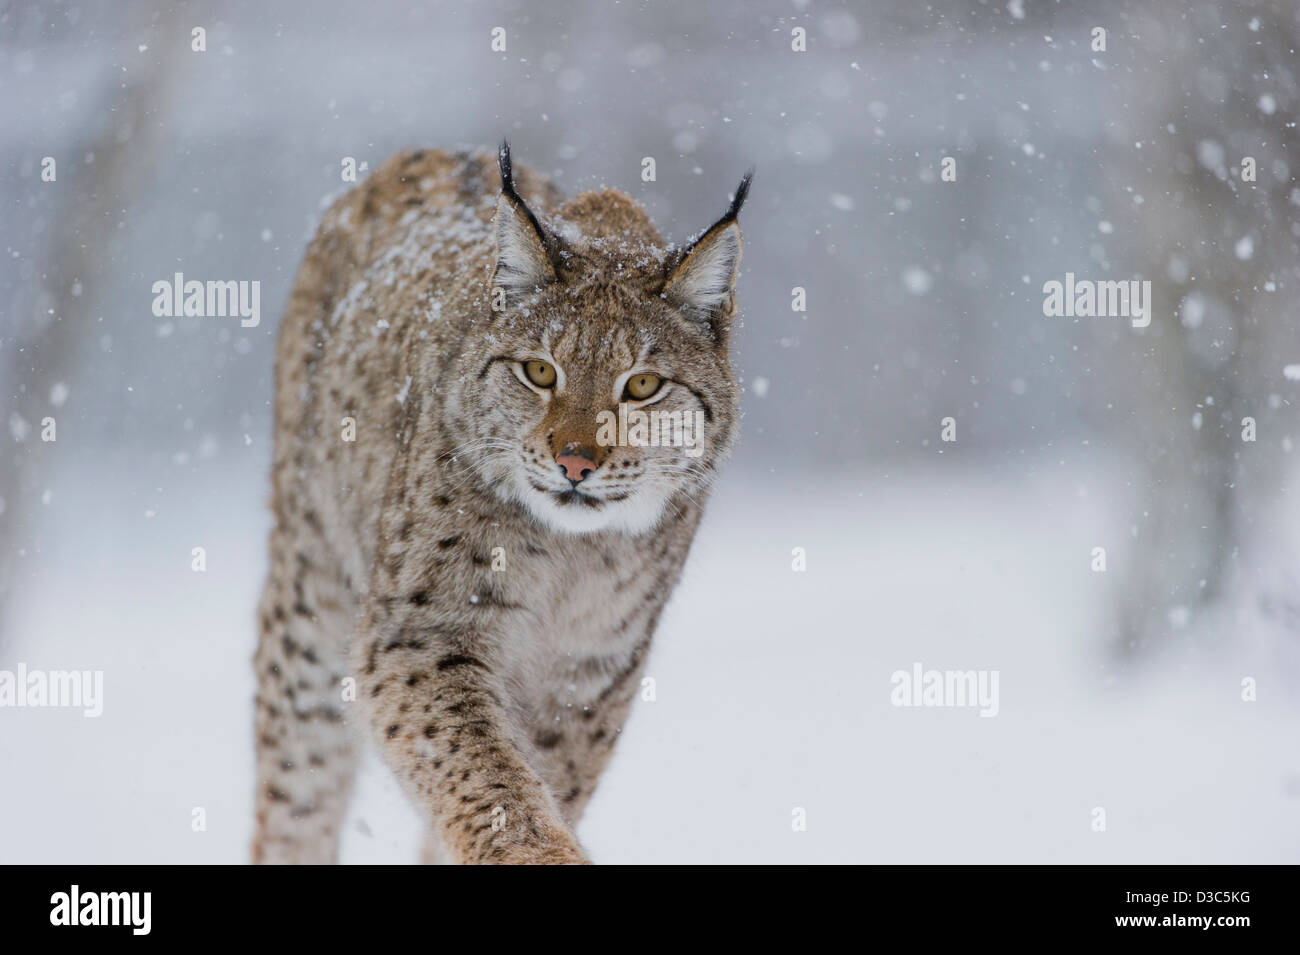 El lince eurásico (Lynx lynx) en piel de invierno sobre la nieve y bajo la nieve, condiciones controladas, Noruega Foto de stock